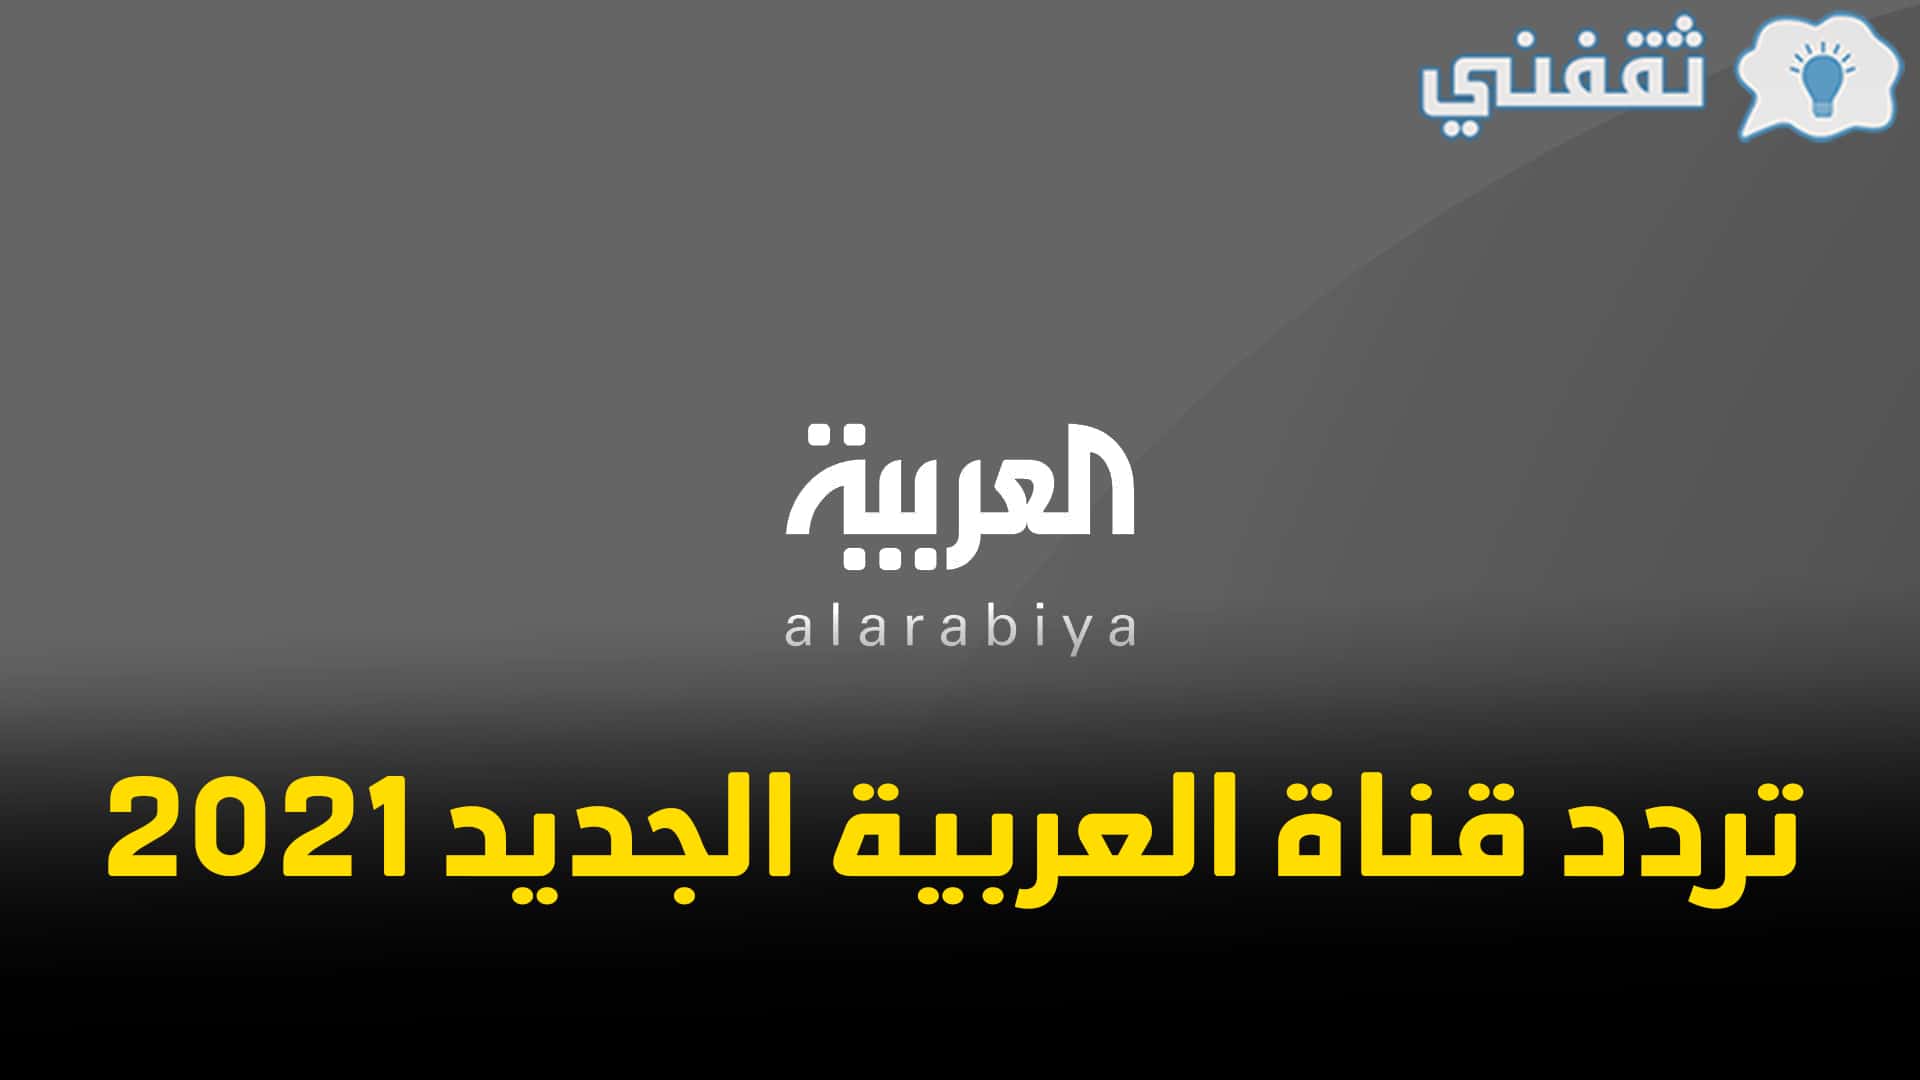 تردد قناة العربية الحدث 2021 Al Arabiya الجديد على النايل سات وعرب سات وهوت بيرد بجودة HD